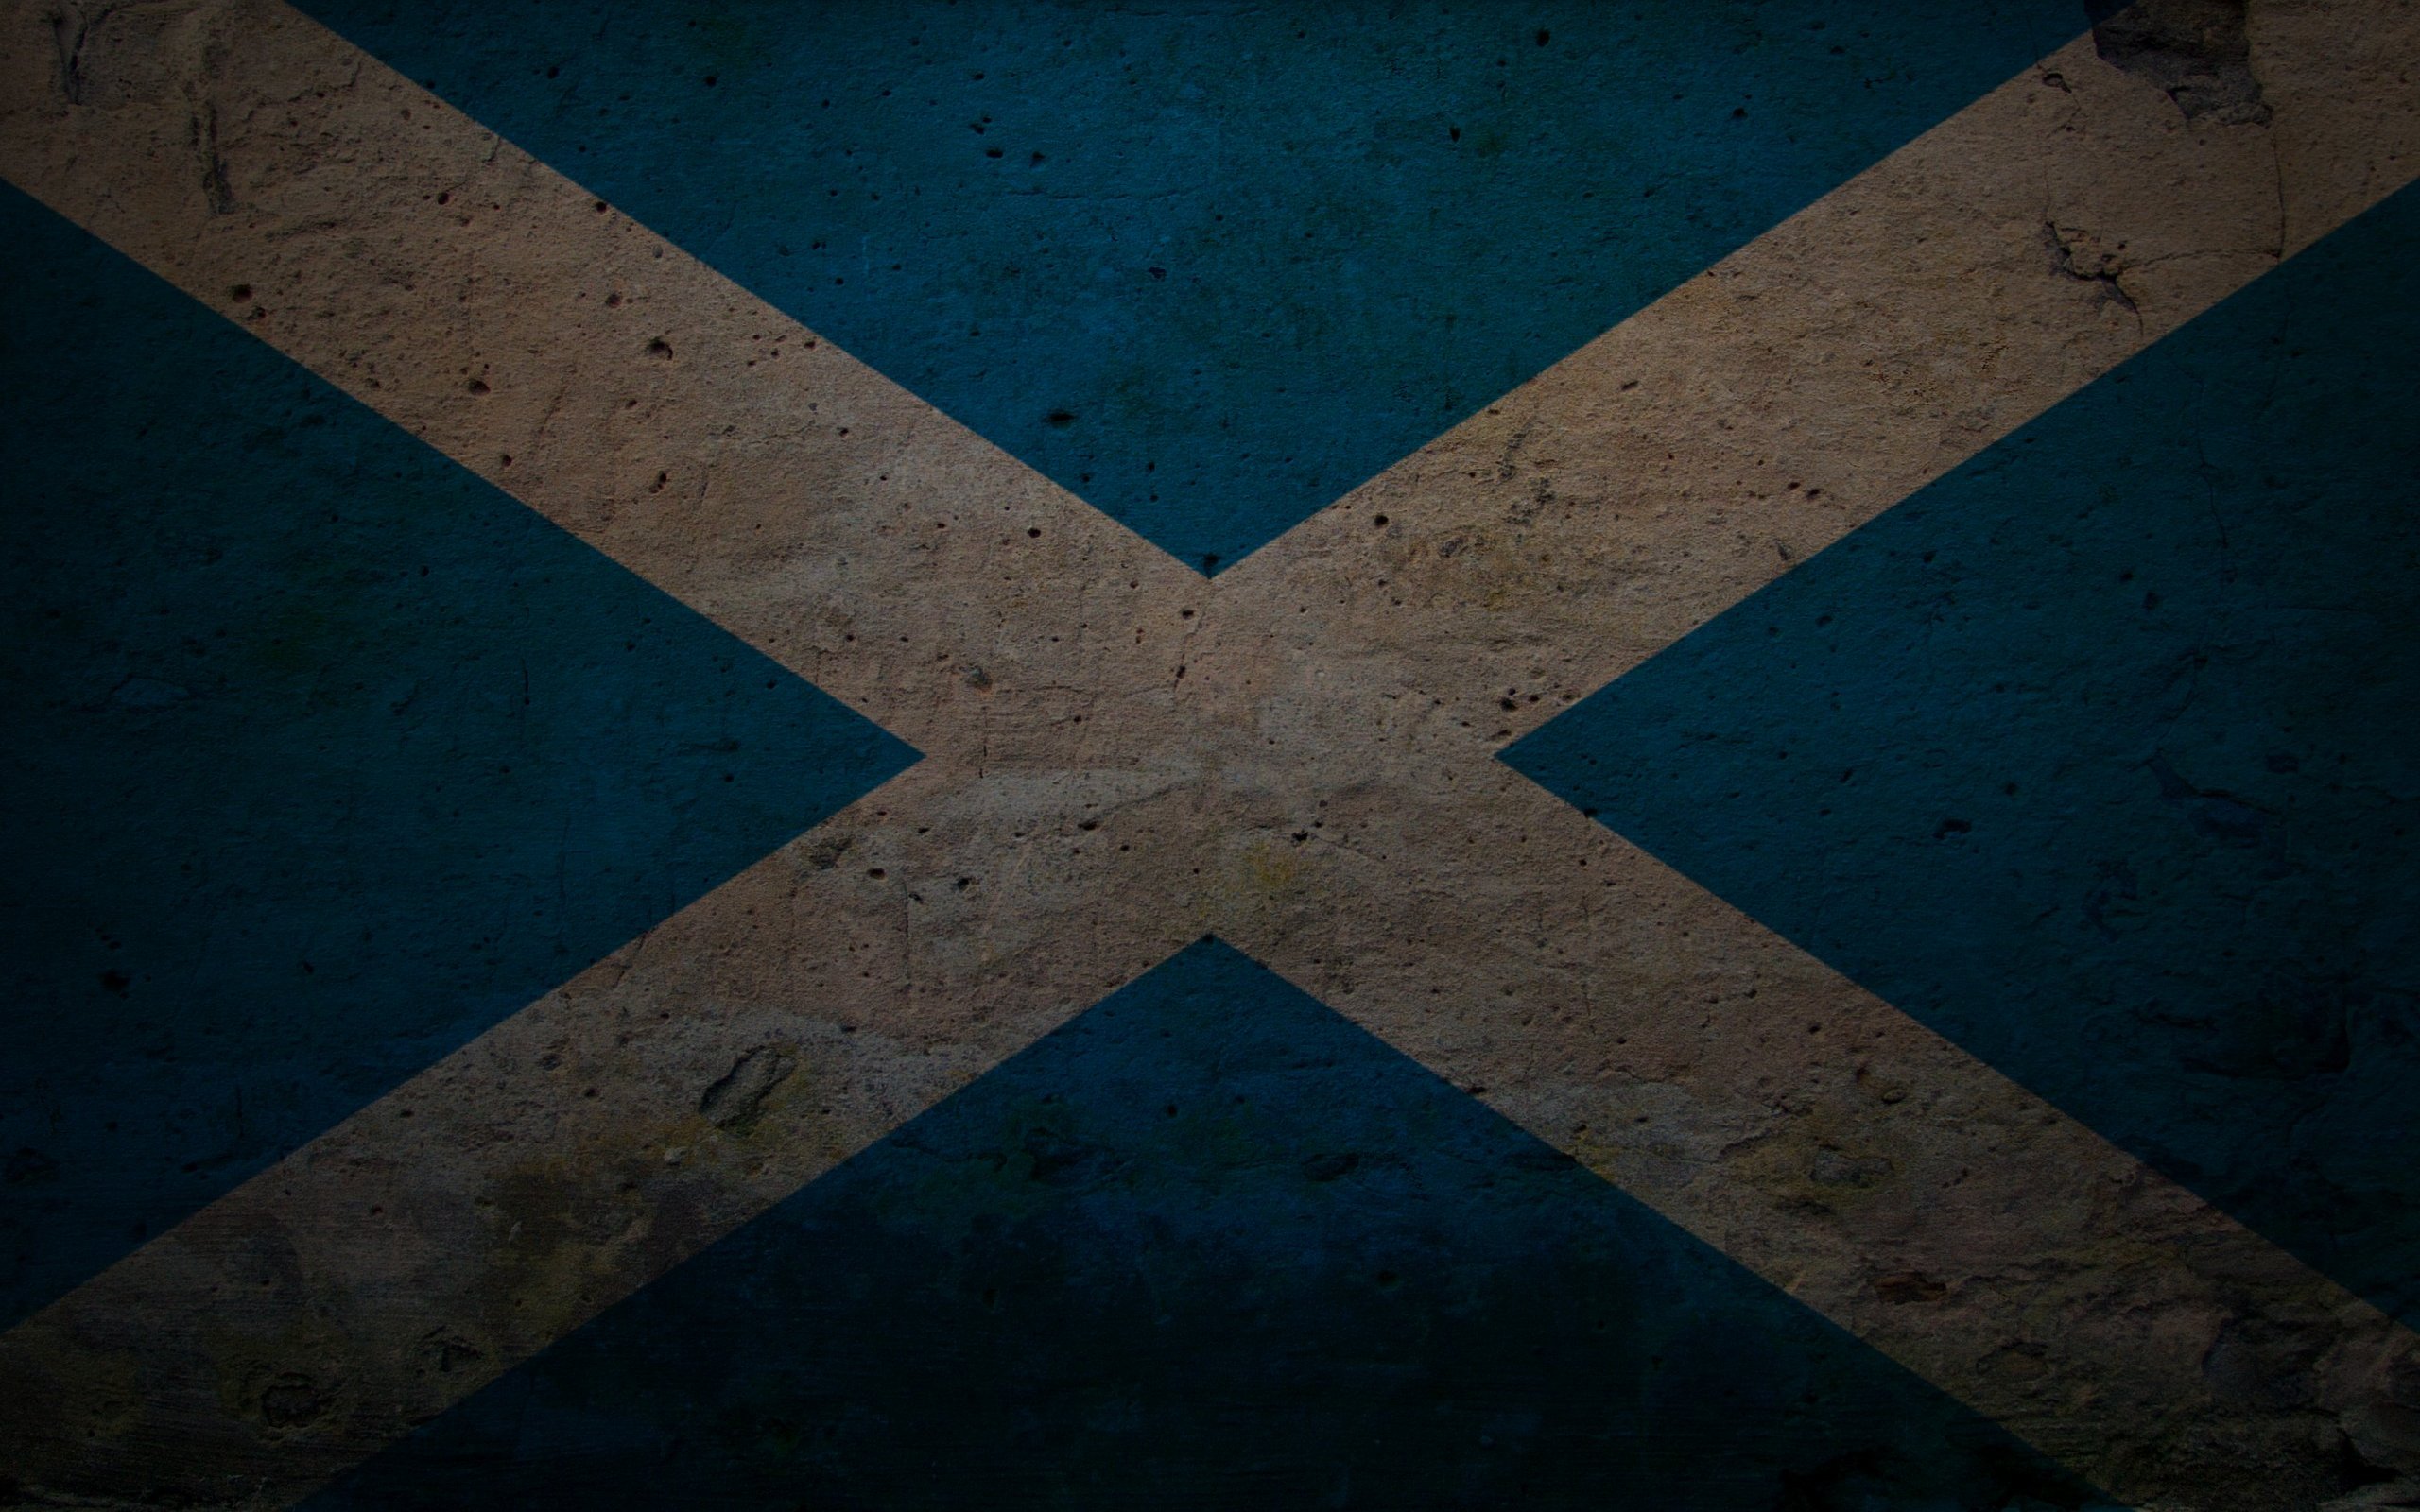 flags, Scotland - desktop wallpaper